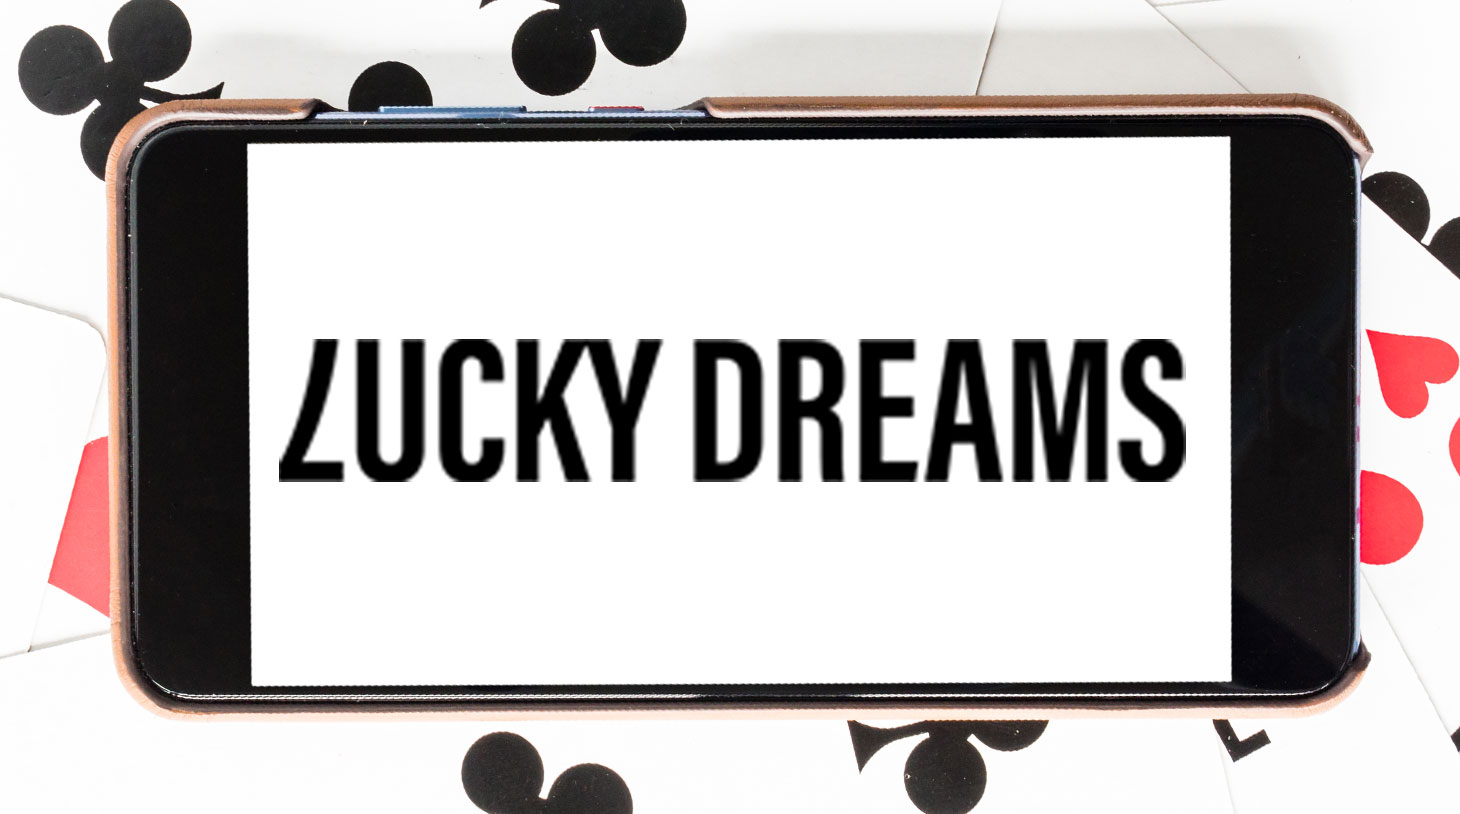 lucky dreams casino mobile app